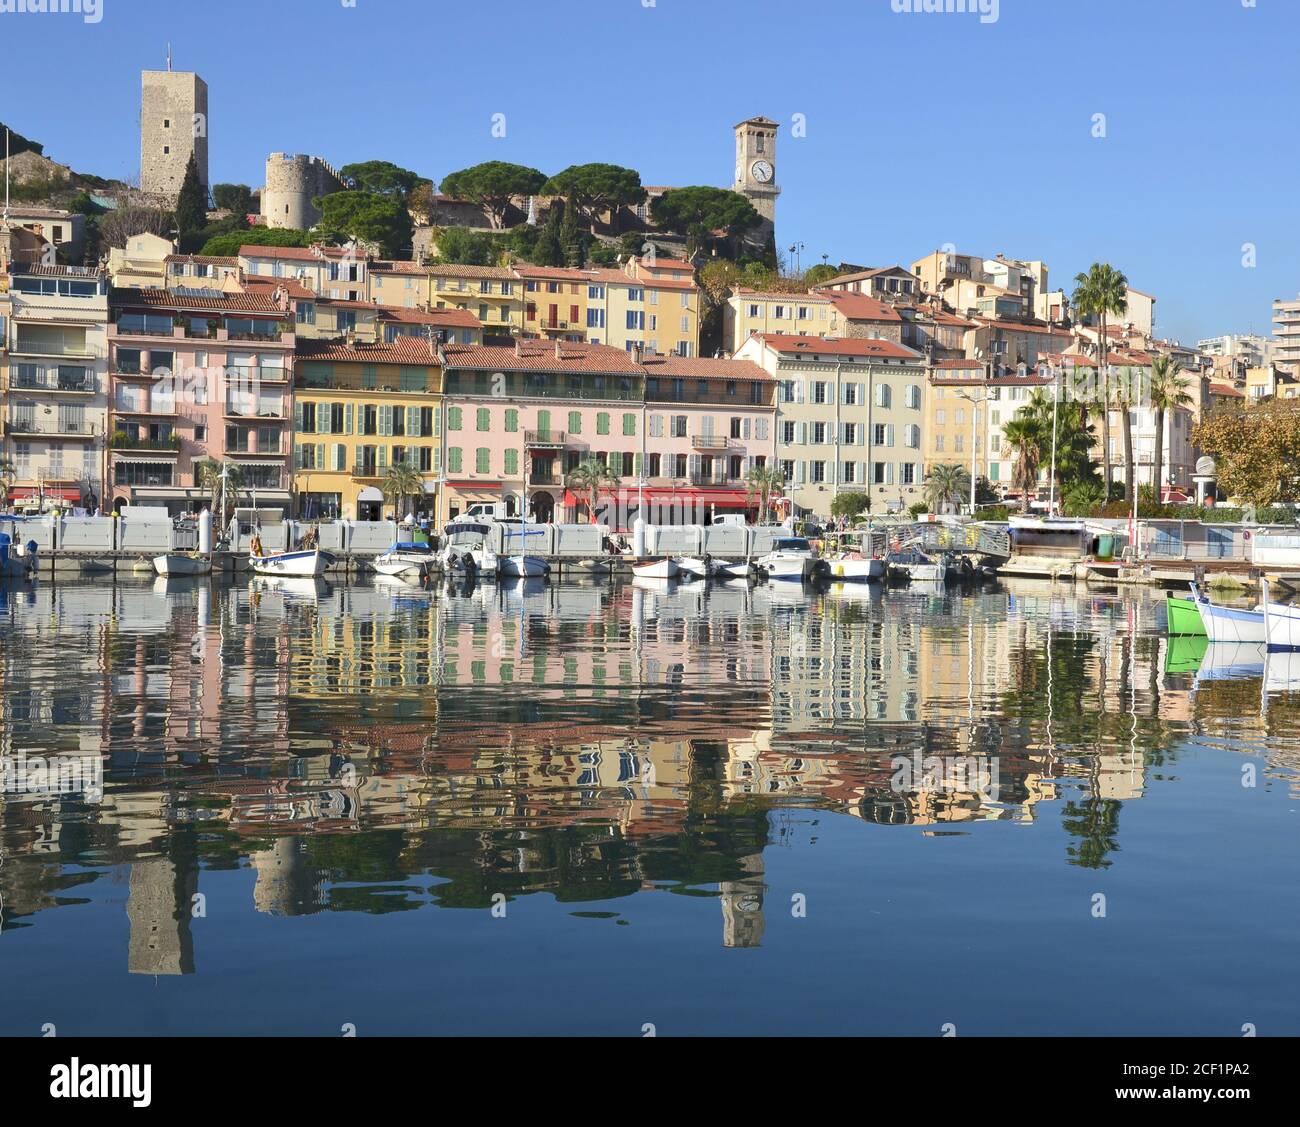 Francia, costa azzurra, Cannes, il Suquet è il quartiere più antico situato sulla collina che domina il vecchio porto e la baia con le isole Lerins. Foto Stock